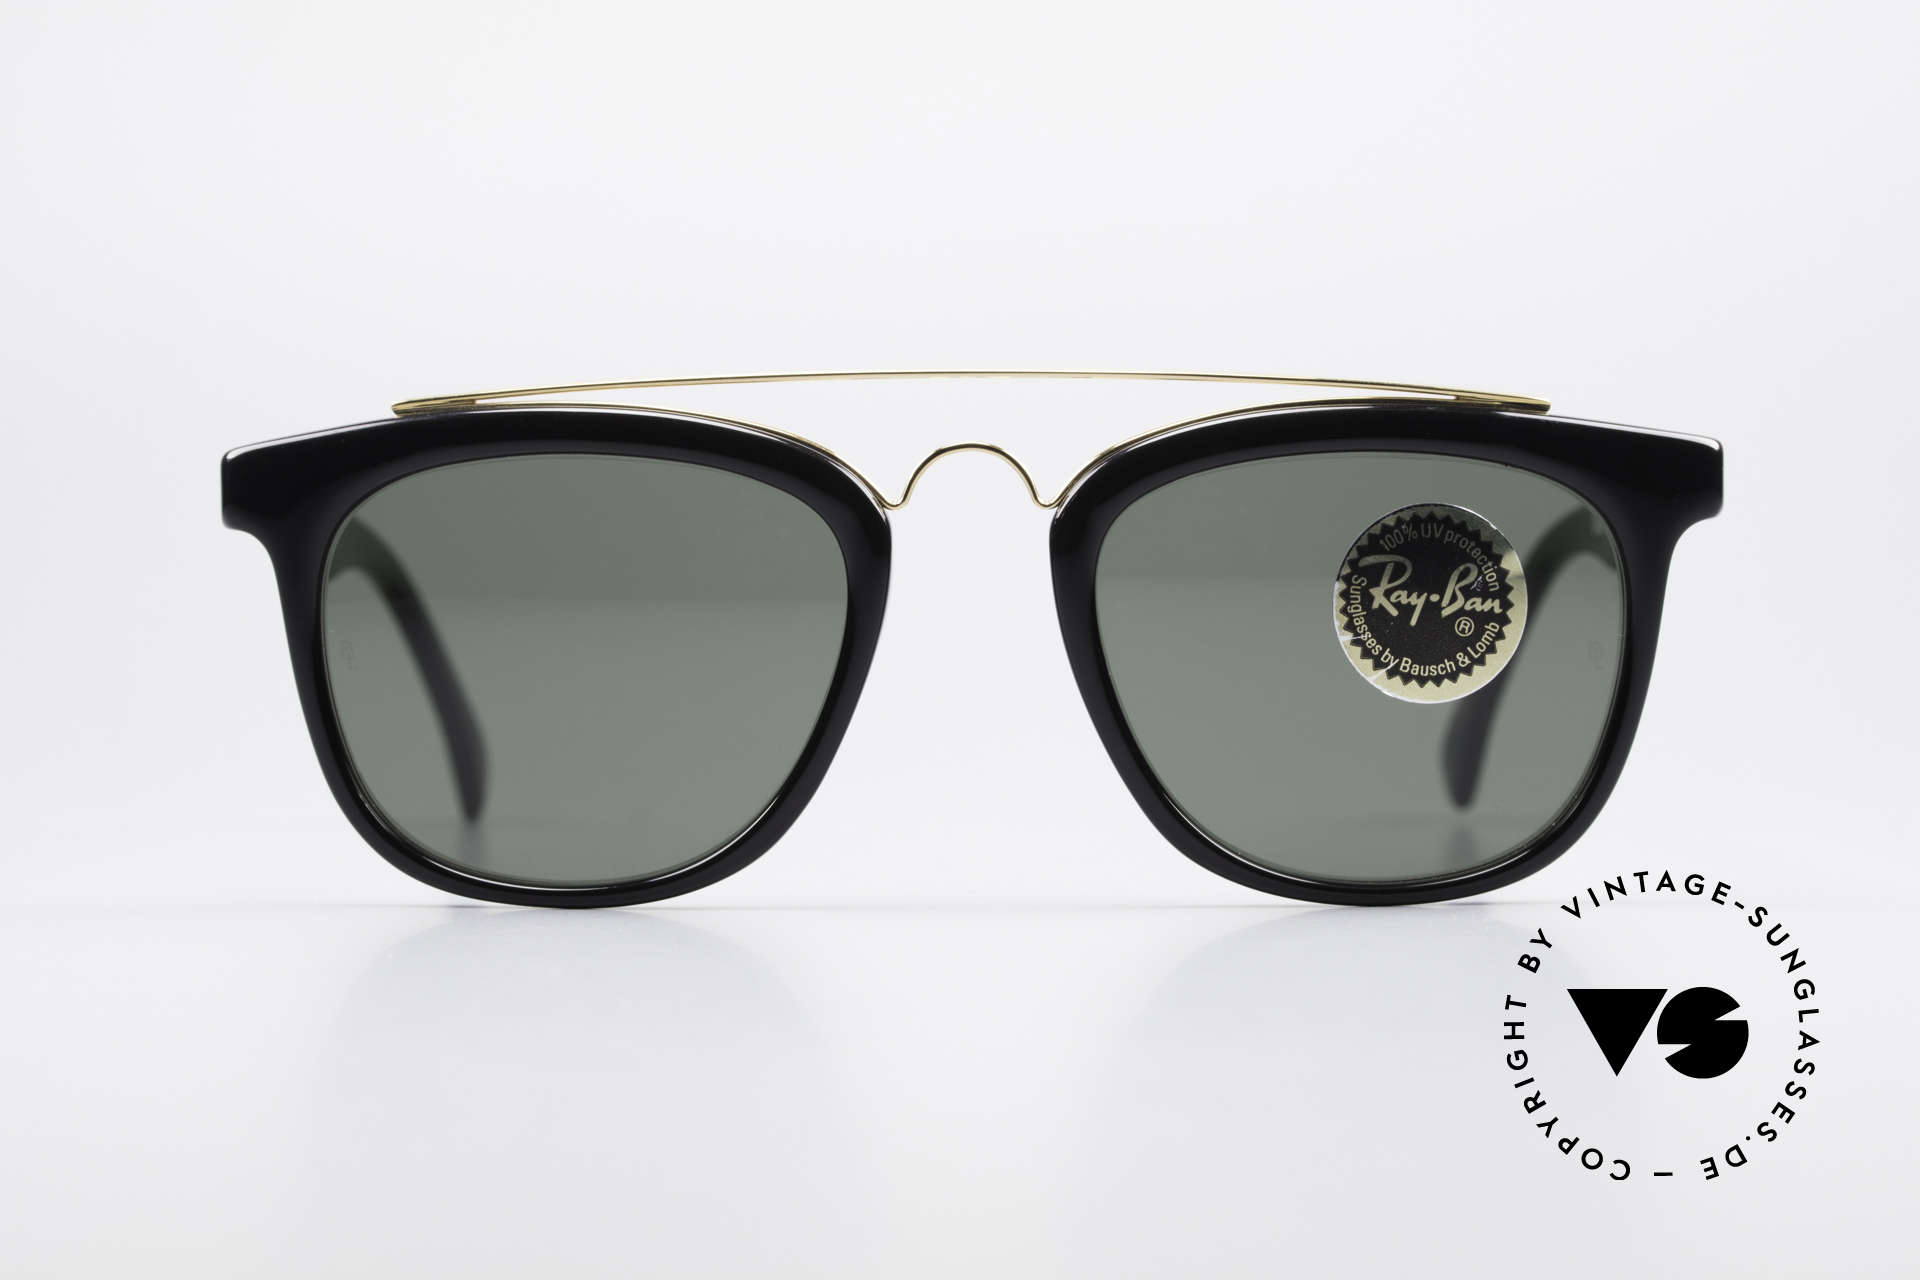 Sunglasses Ray Ban Gatsby Style 5 USA Bausch Lomb Sunglasses